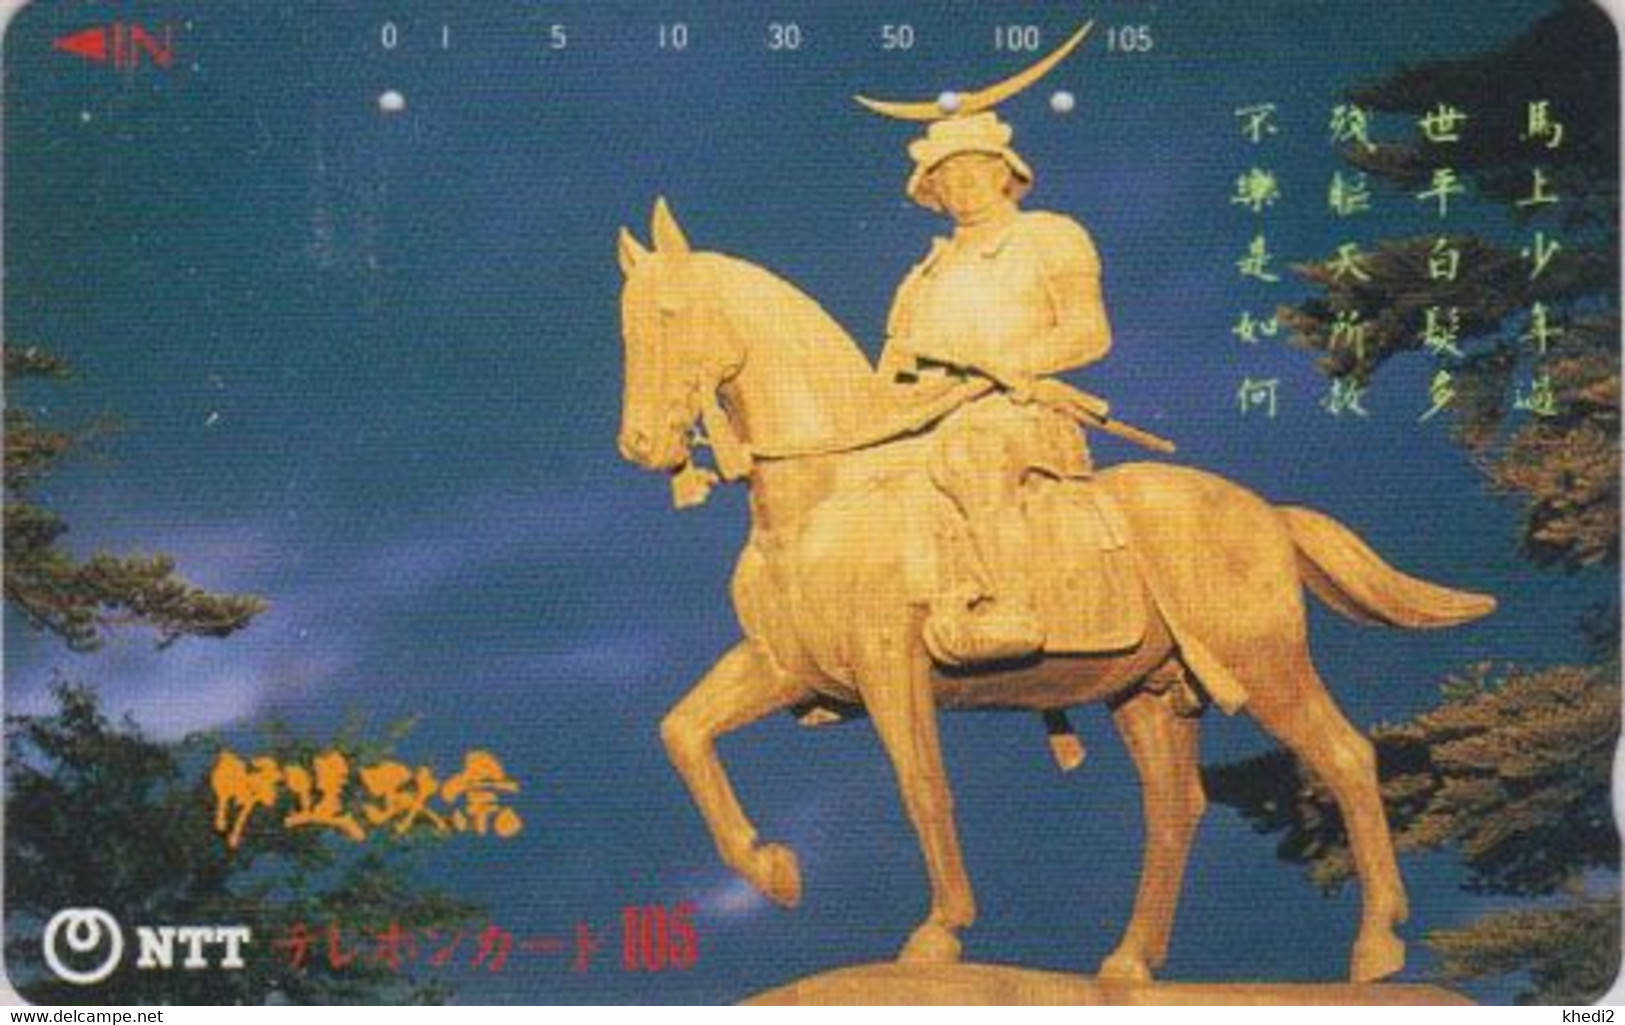 Télécarte JAPON / NTT 410-143 A - TBE - Statue équestre - Samouraï à Cheval Horse -  JAPAN Phonecard - Horses